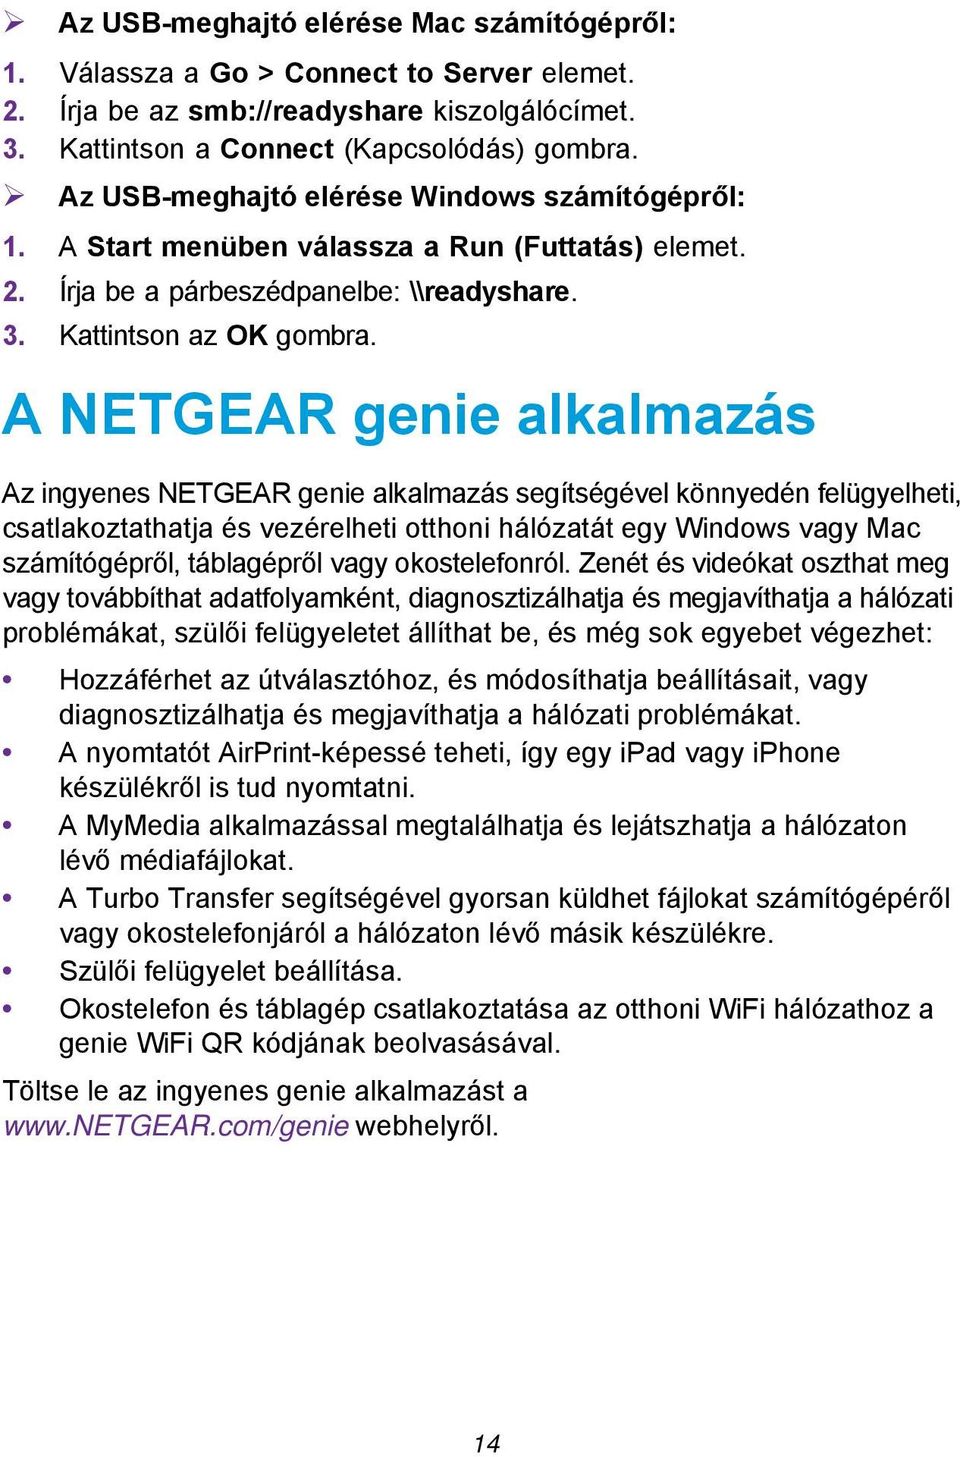 A NETGEAR genie alkalmazás Az ingyenes NETGEAR genie alkalmazás segítségével könnyedén felügyelheti, csatlakoztathatja és vezérelheti otthoni hálózatát egy Windows vagy Mac számítógépről, táblagépről